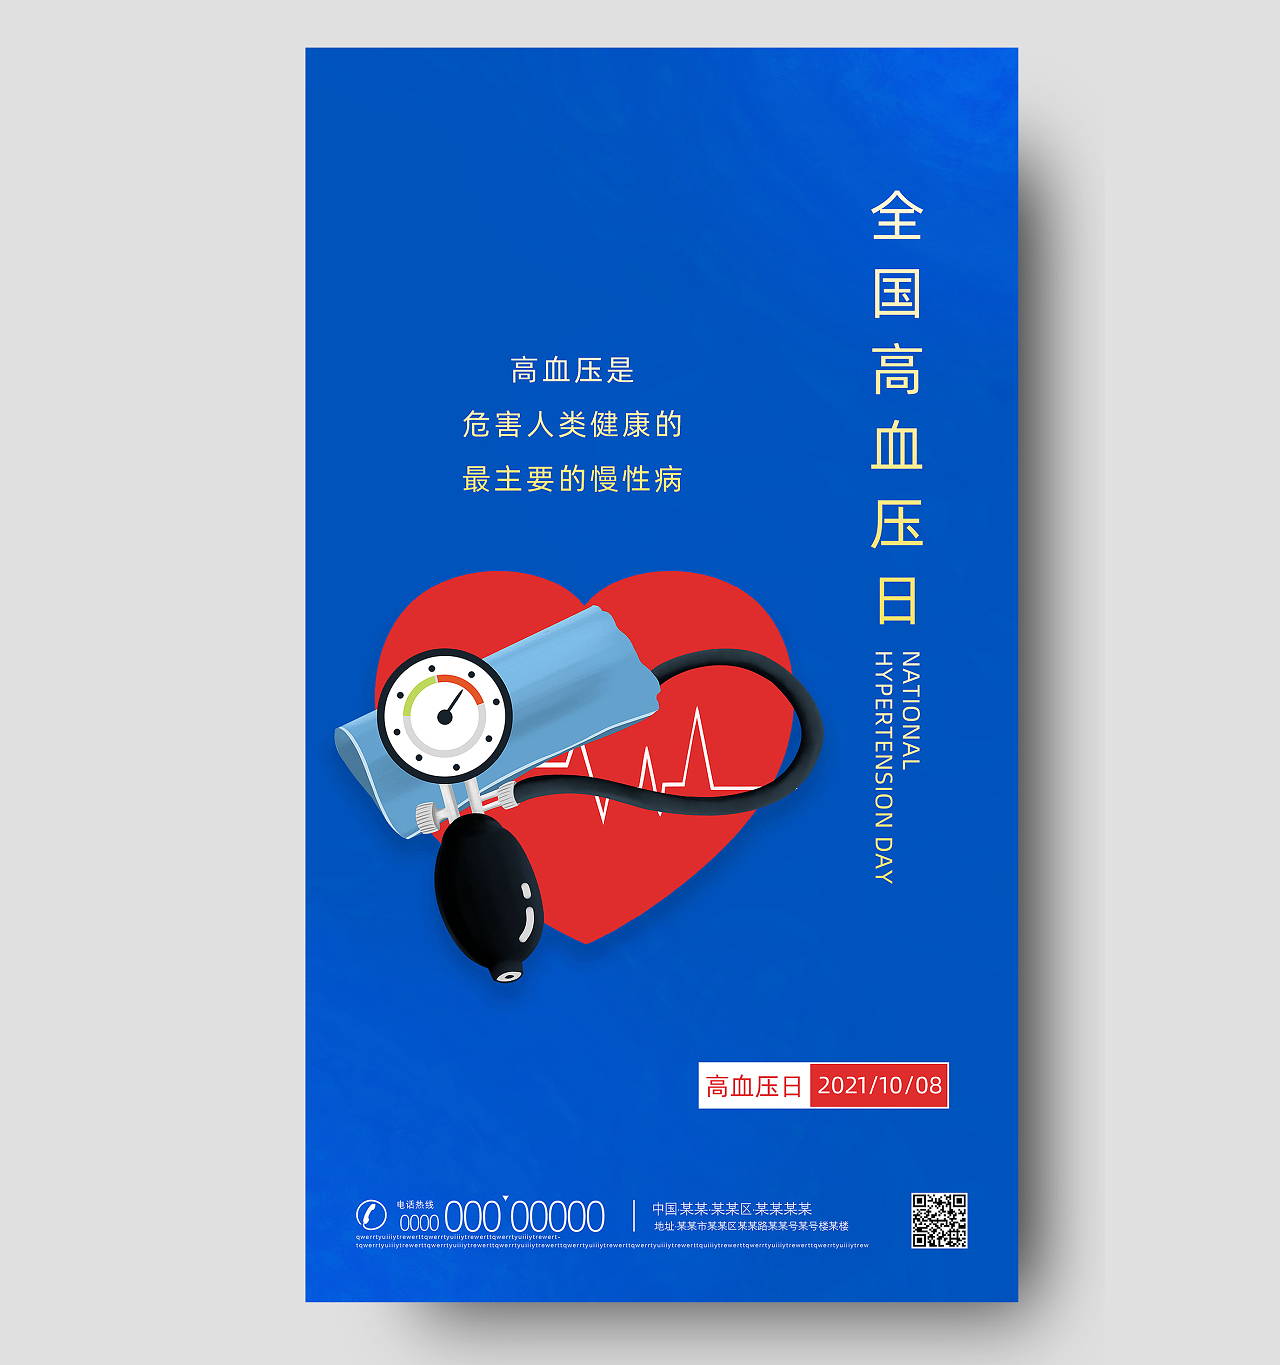 蓝色简约手绘全国高血压日手机海报UI辛亥革命纪念日手机海报